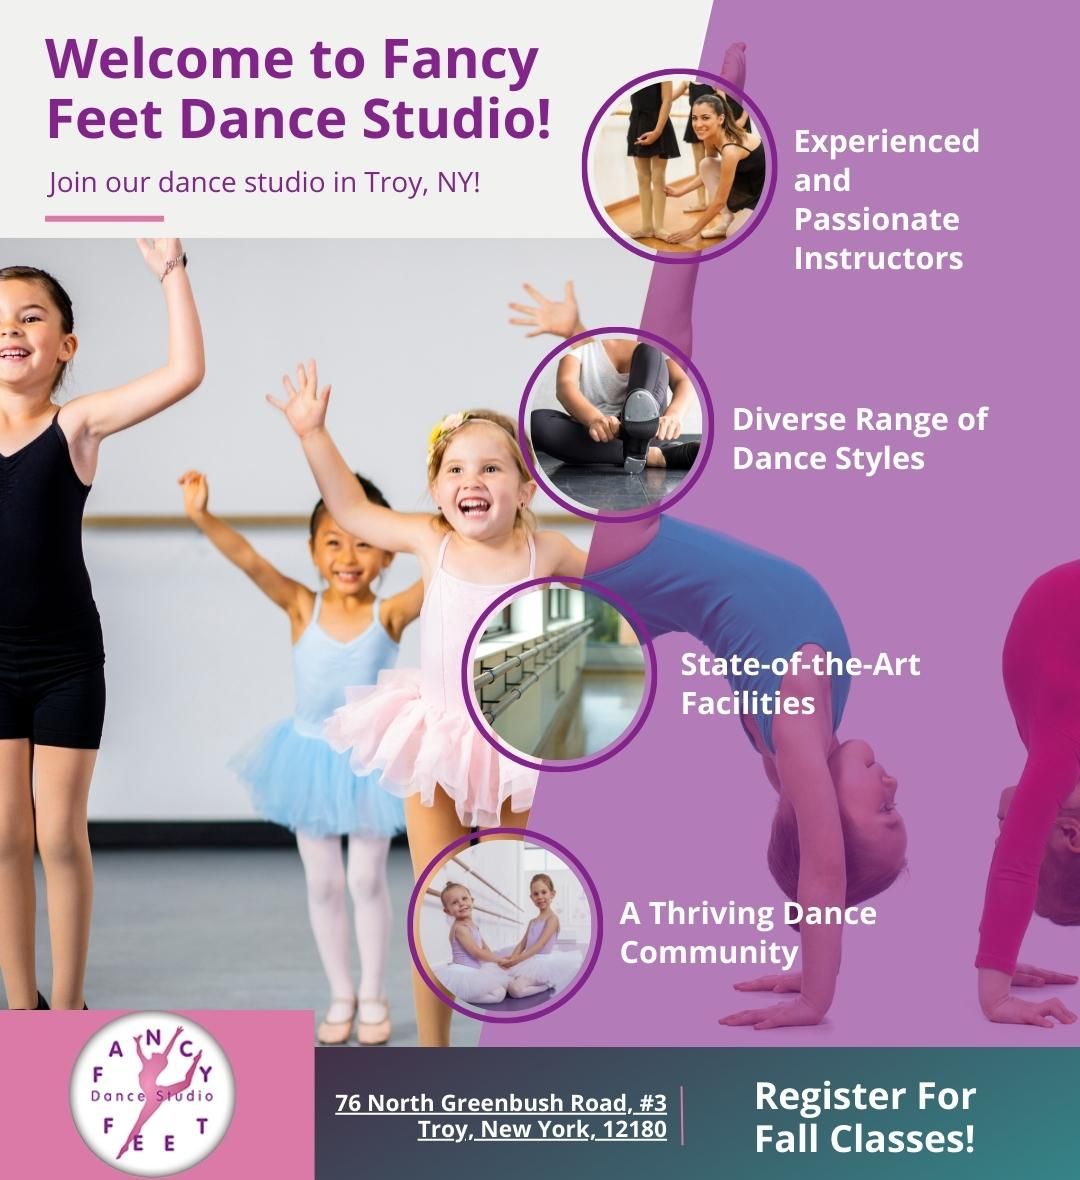 M39013 - Fancy Feet Dance Studio - Welcome.jpg